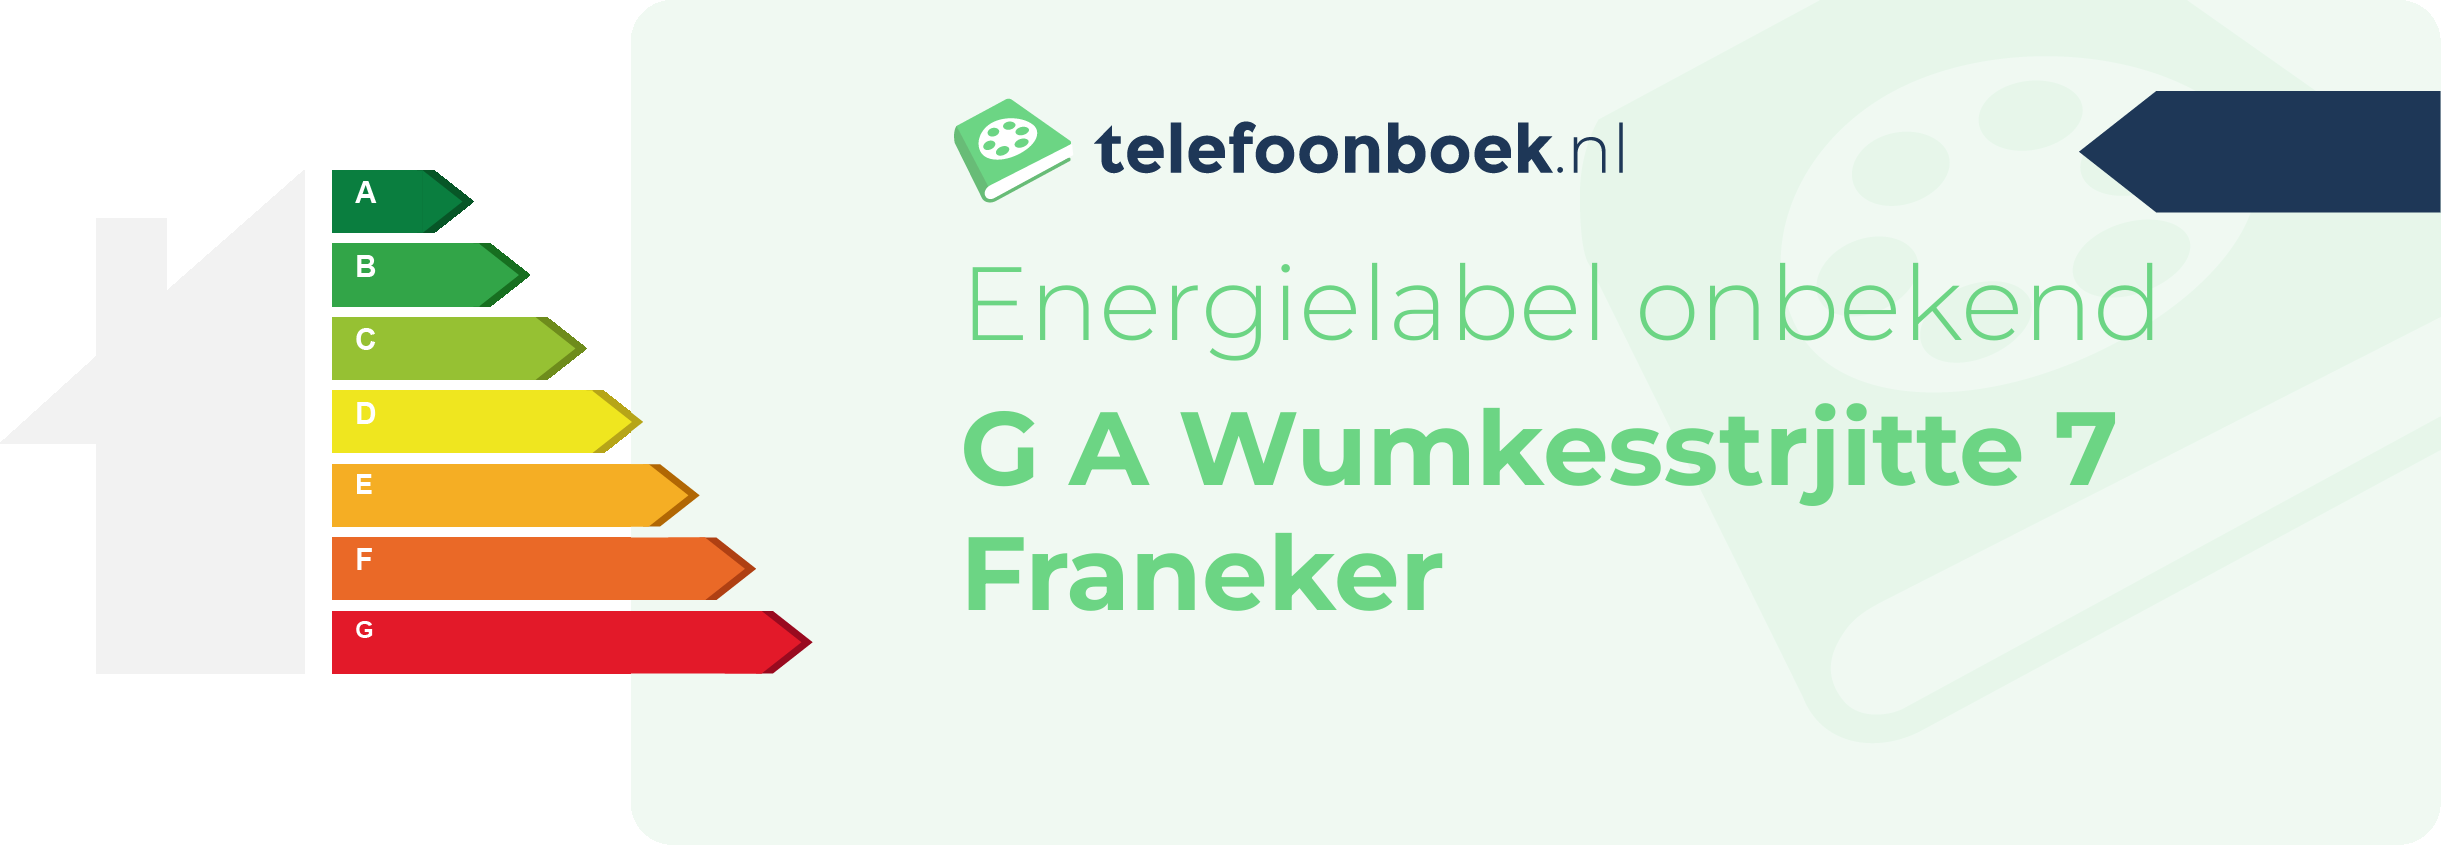 Energielabel G A Wumkesstrjitte 7 Franeker